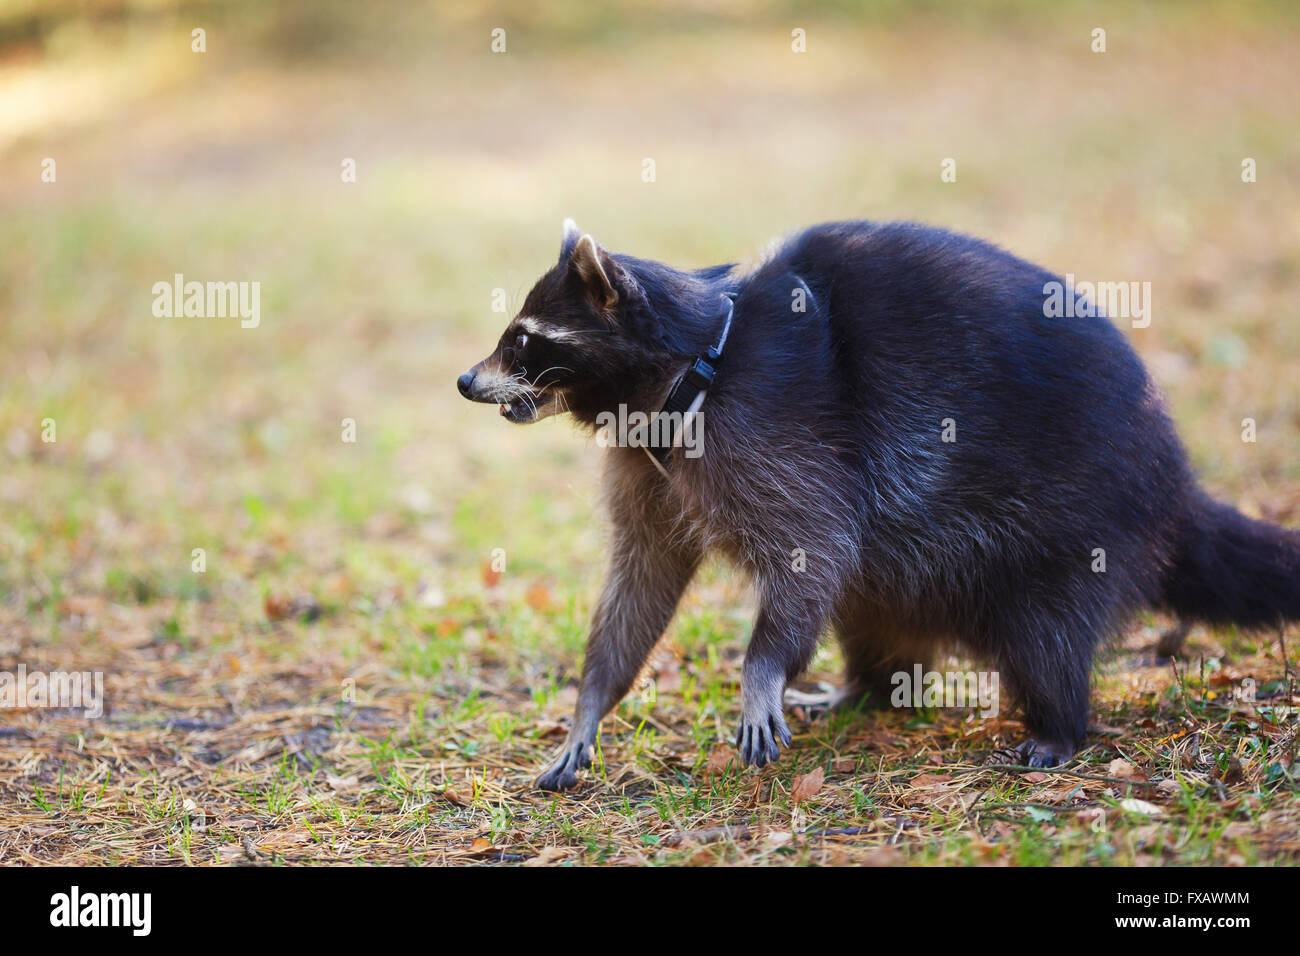 Porträt eines Waschbären in einem Wald im Herbst Stockfoto